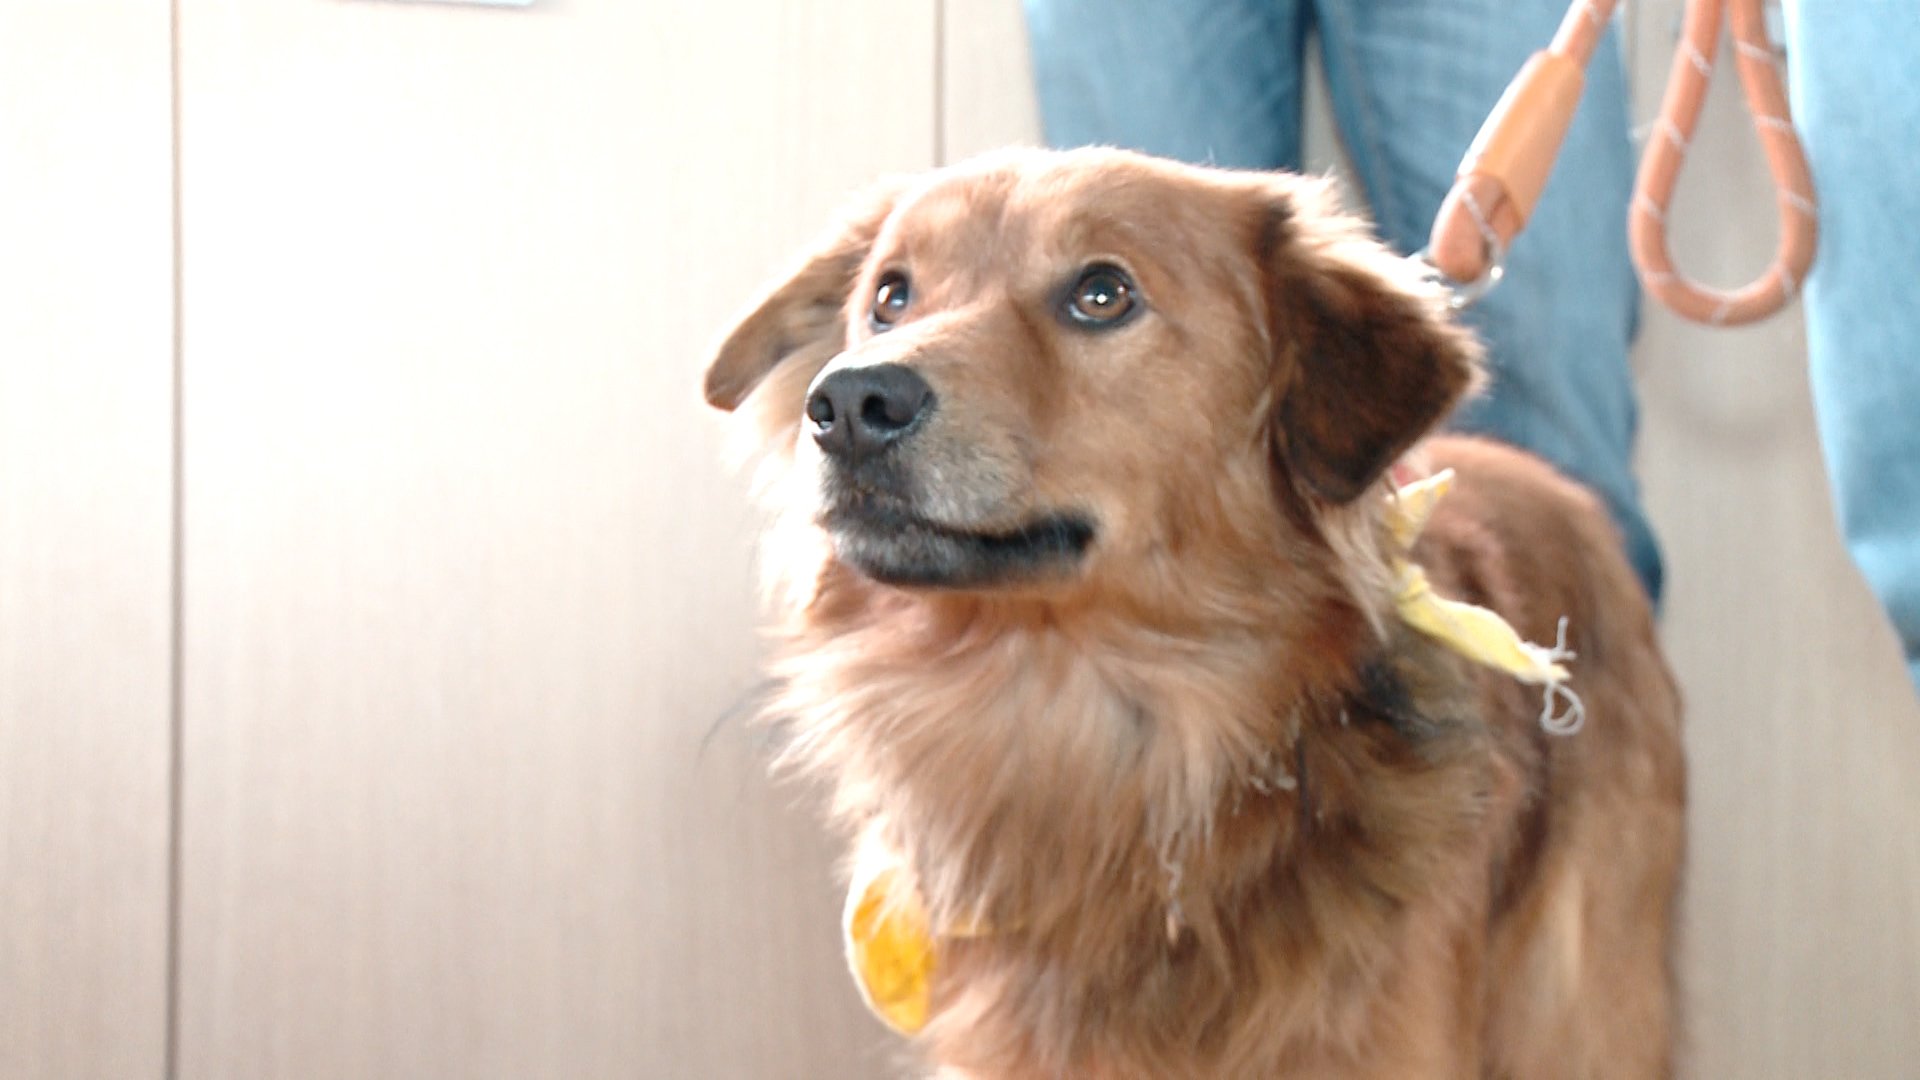 L’assessore vuole introdurre la “Pet therapy” nella sanità piemontese